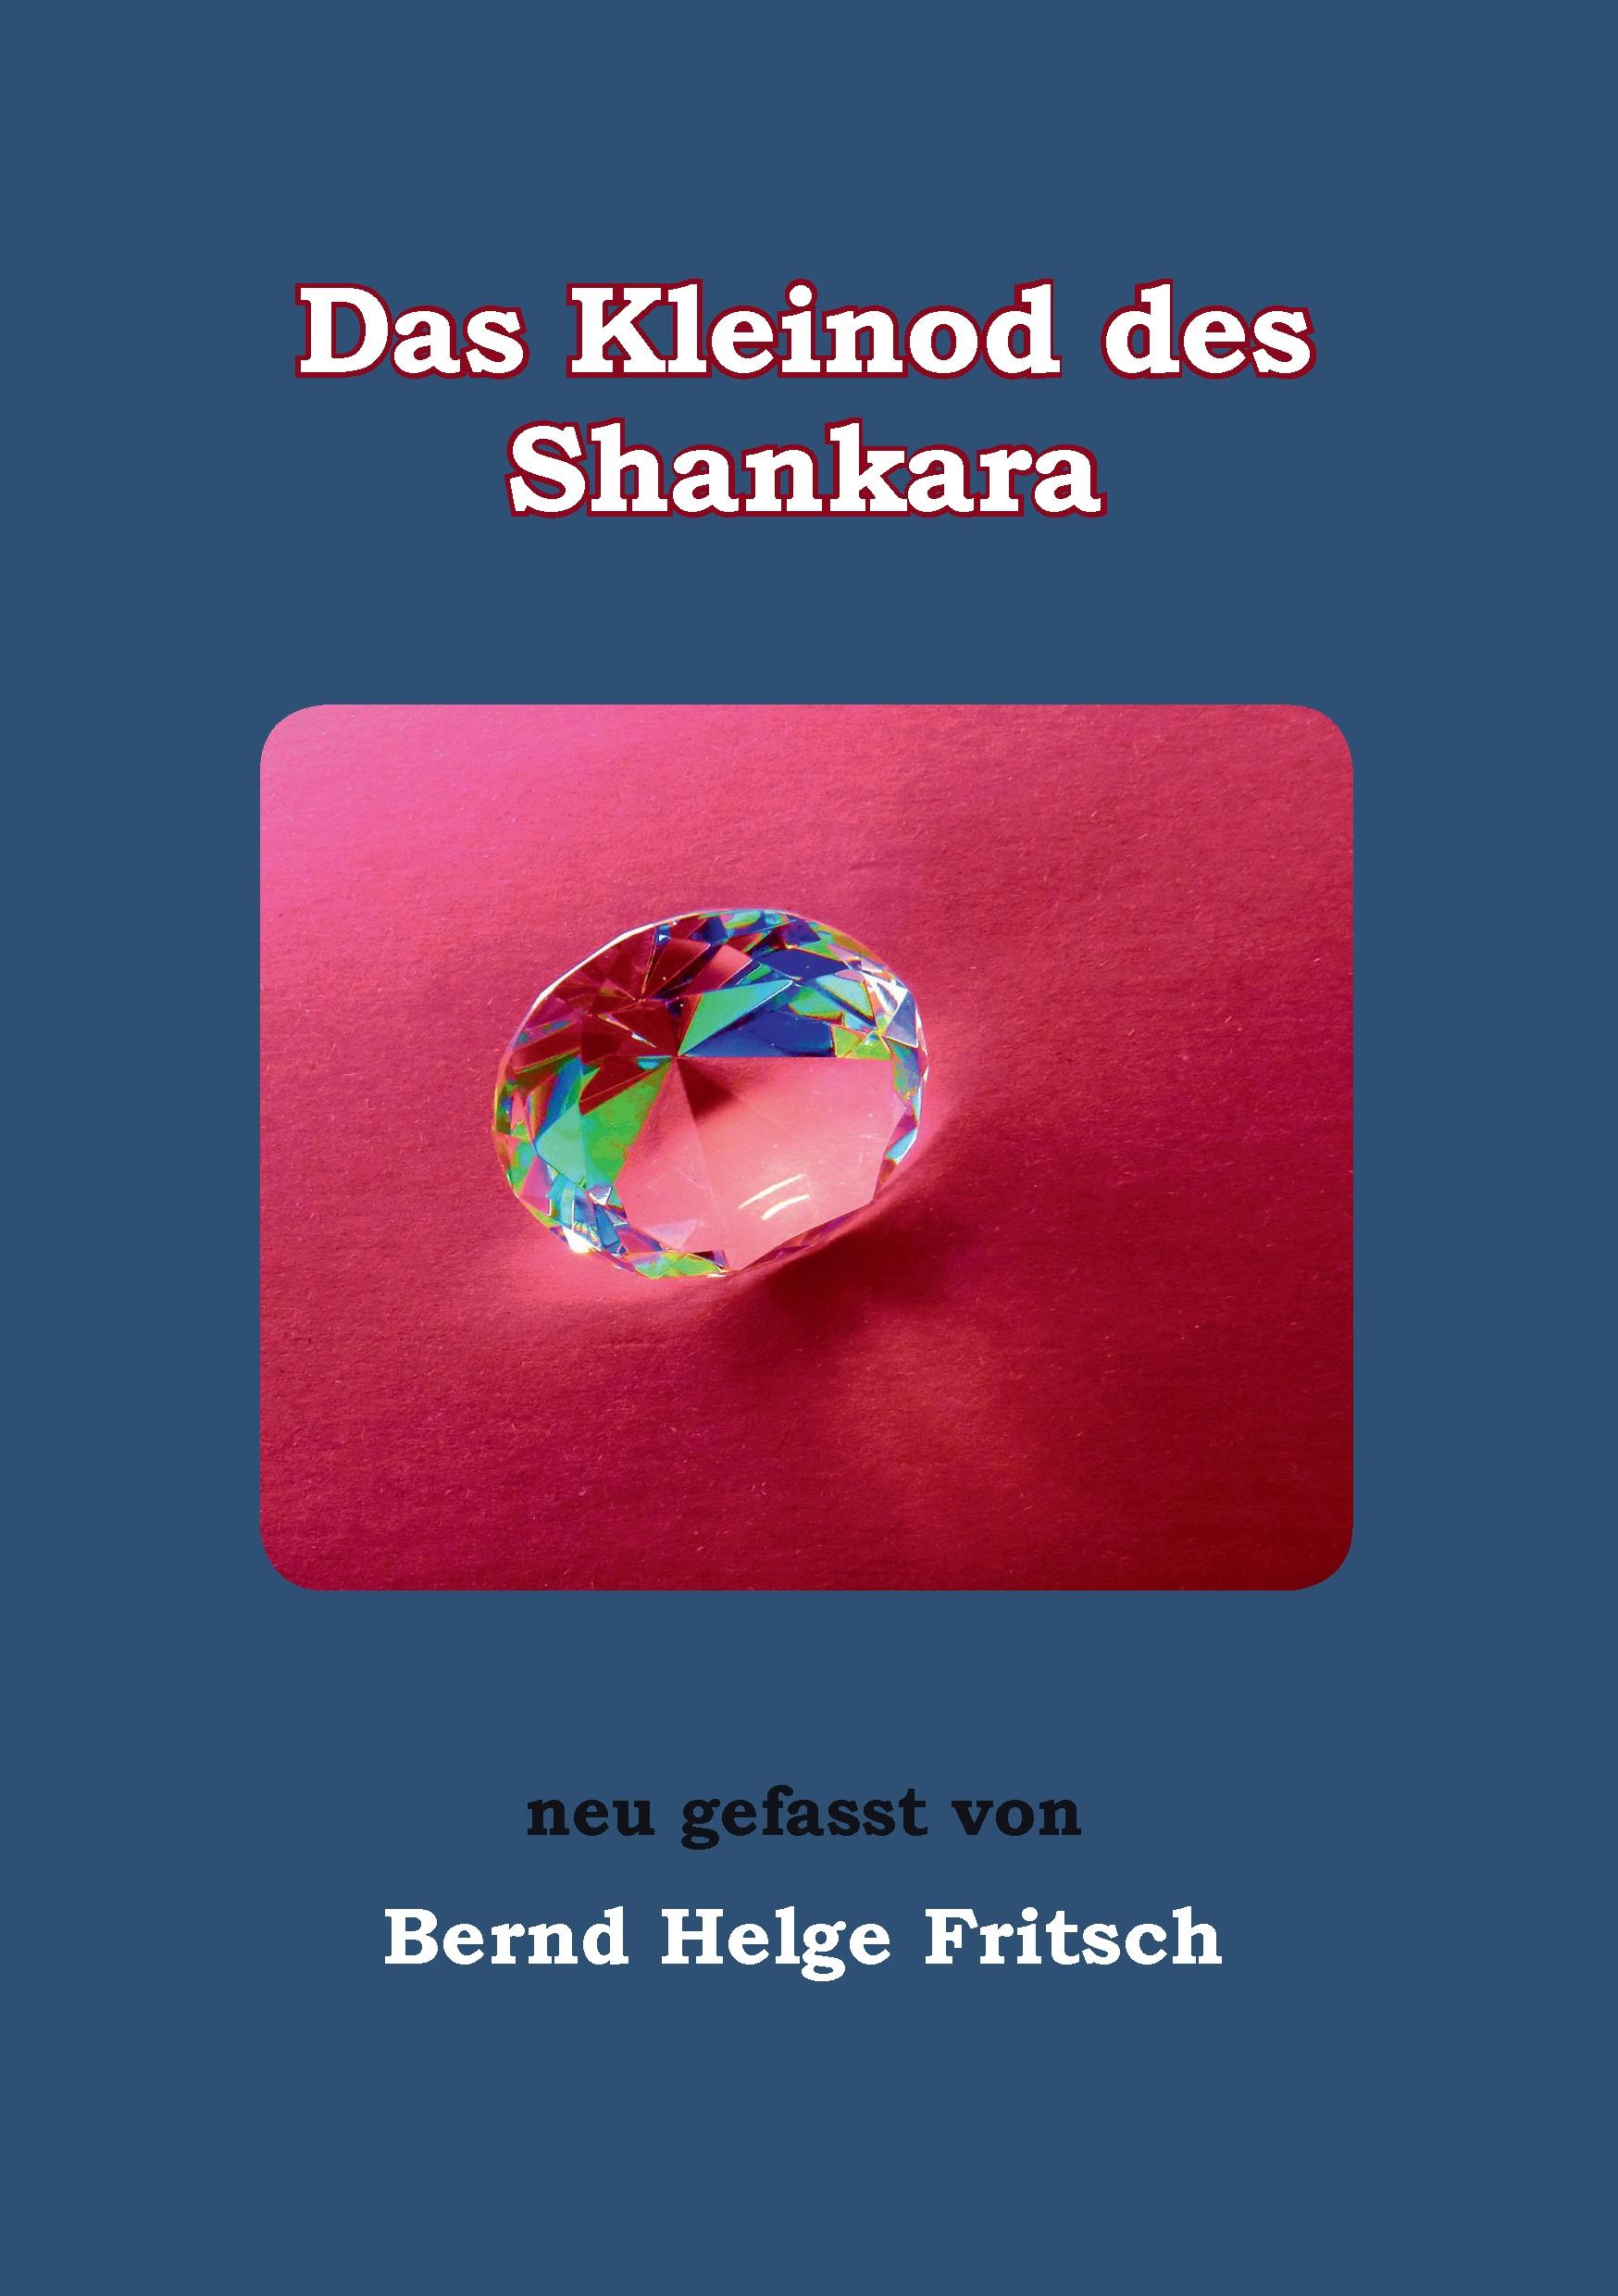 Das Kleinod des Shankara - Bernd Helge Fritsch